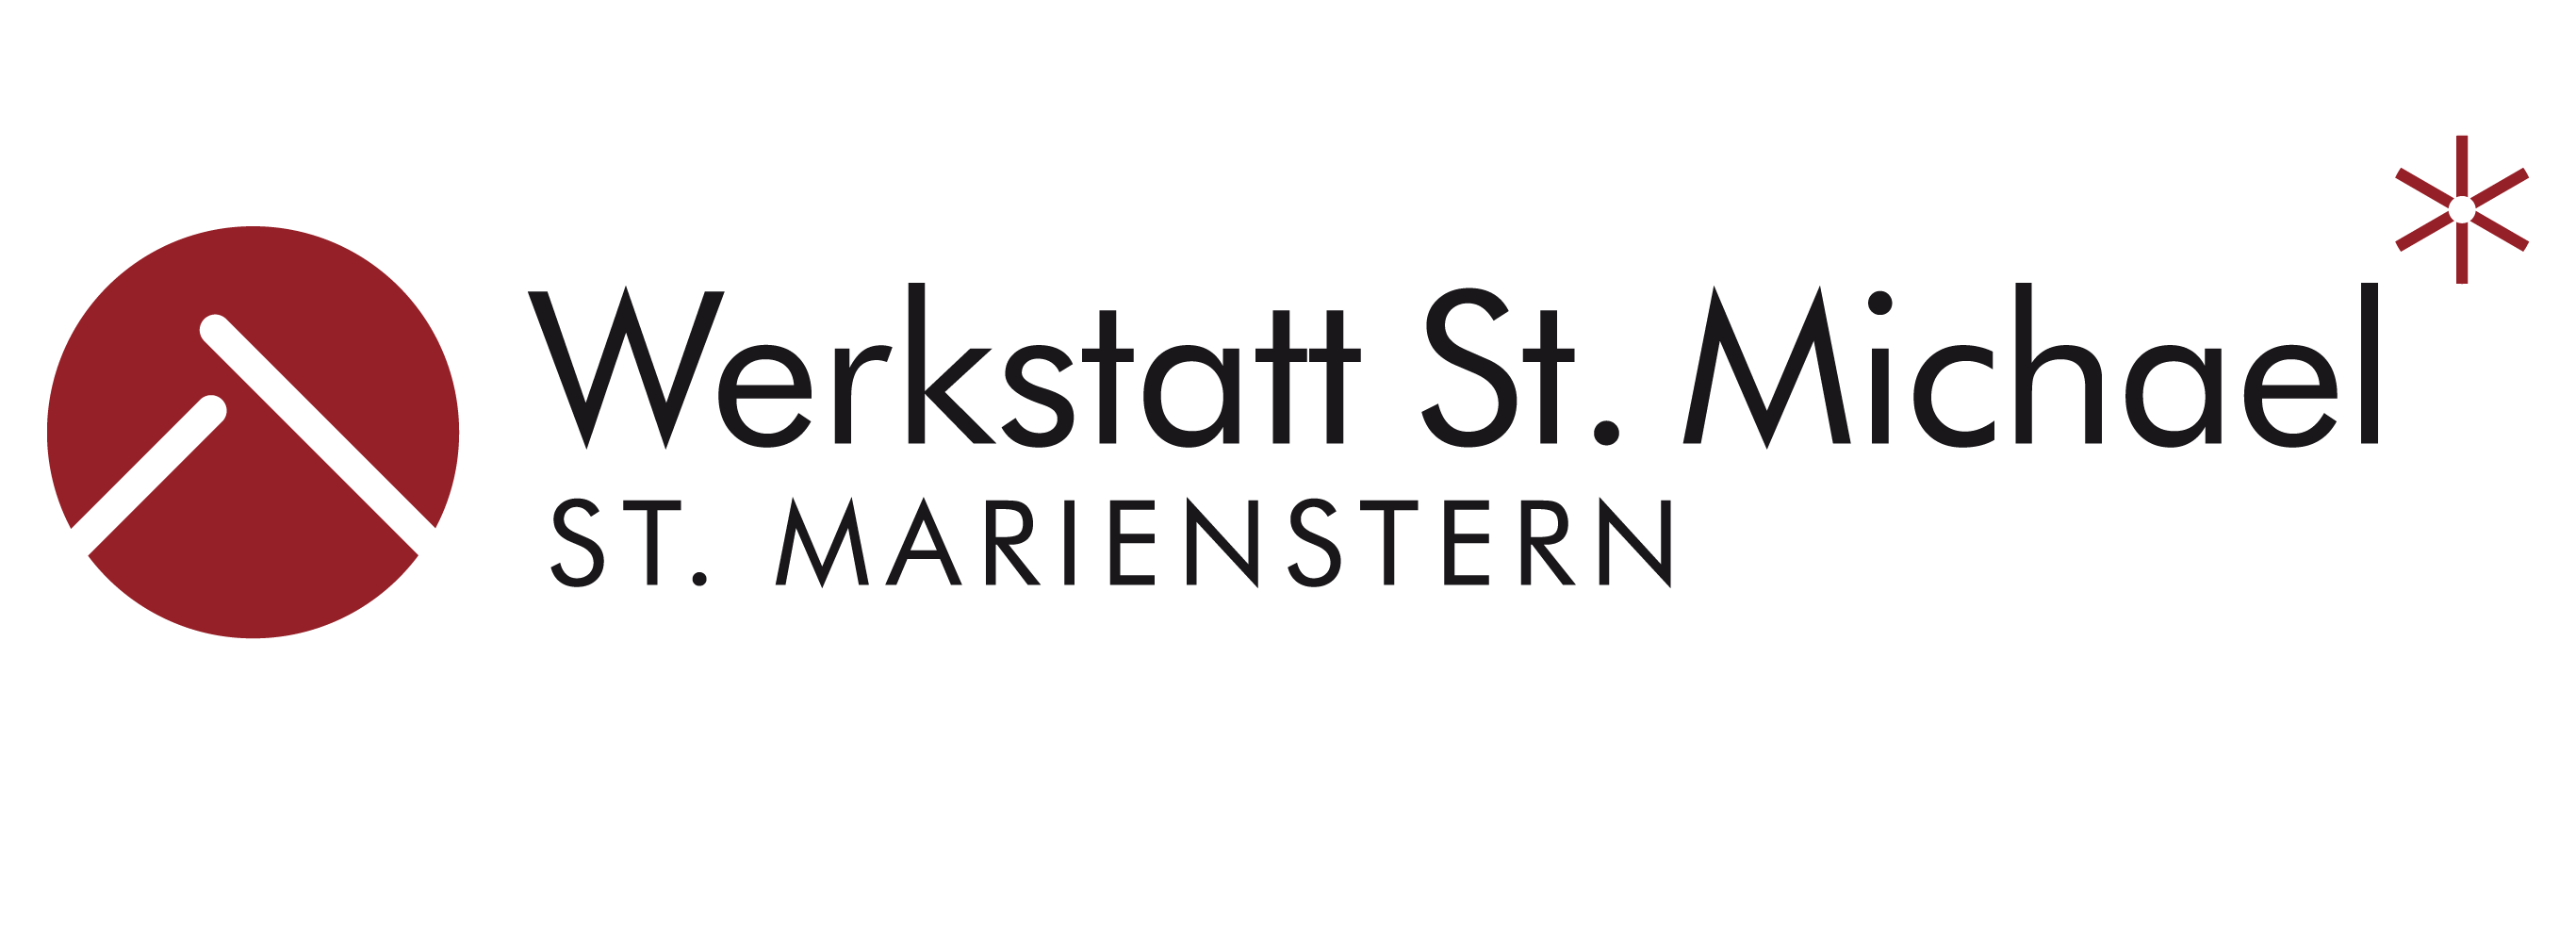 Kloster St. Marienstern Werkstatt